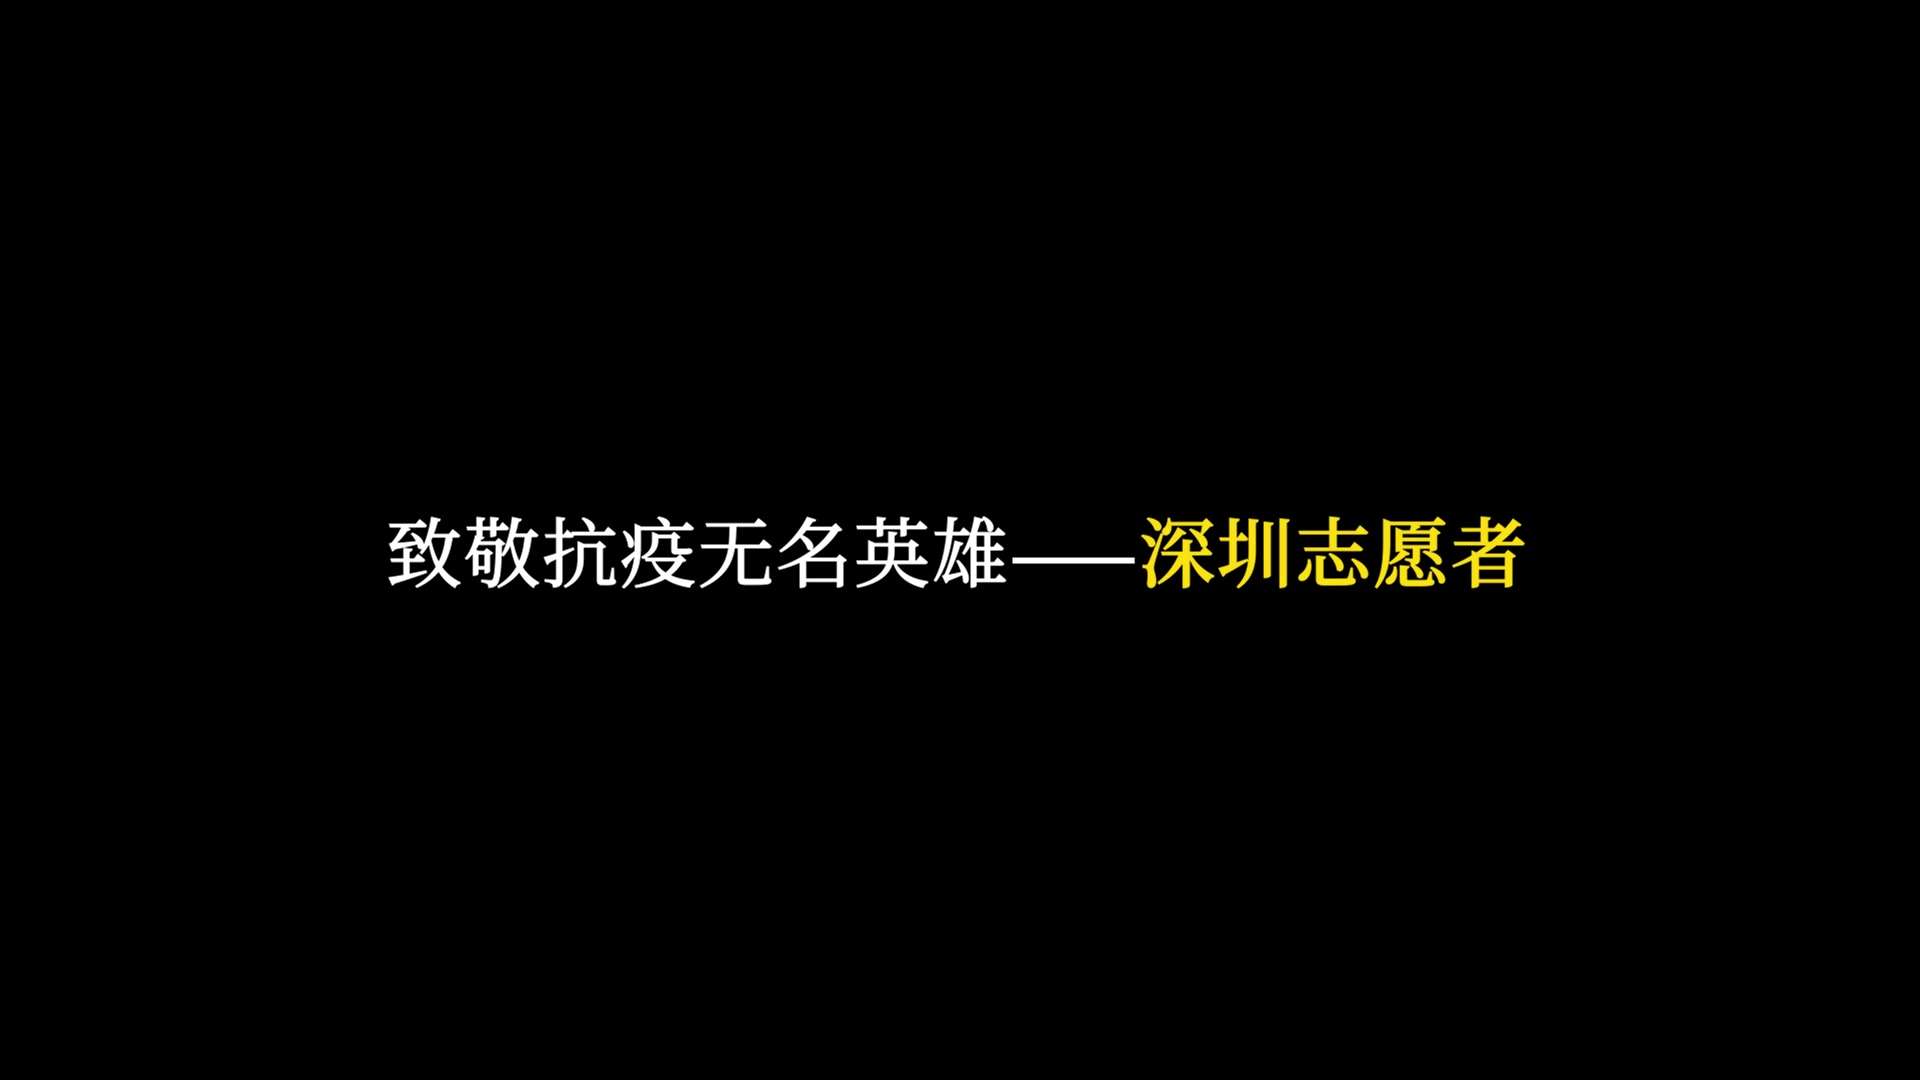 深圳志愿者宣传片《抗疫无名英雄》